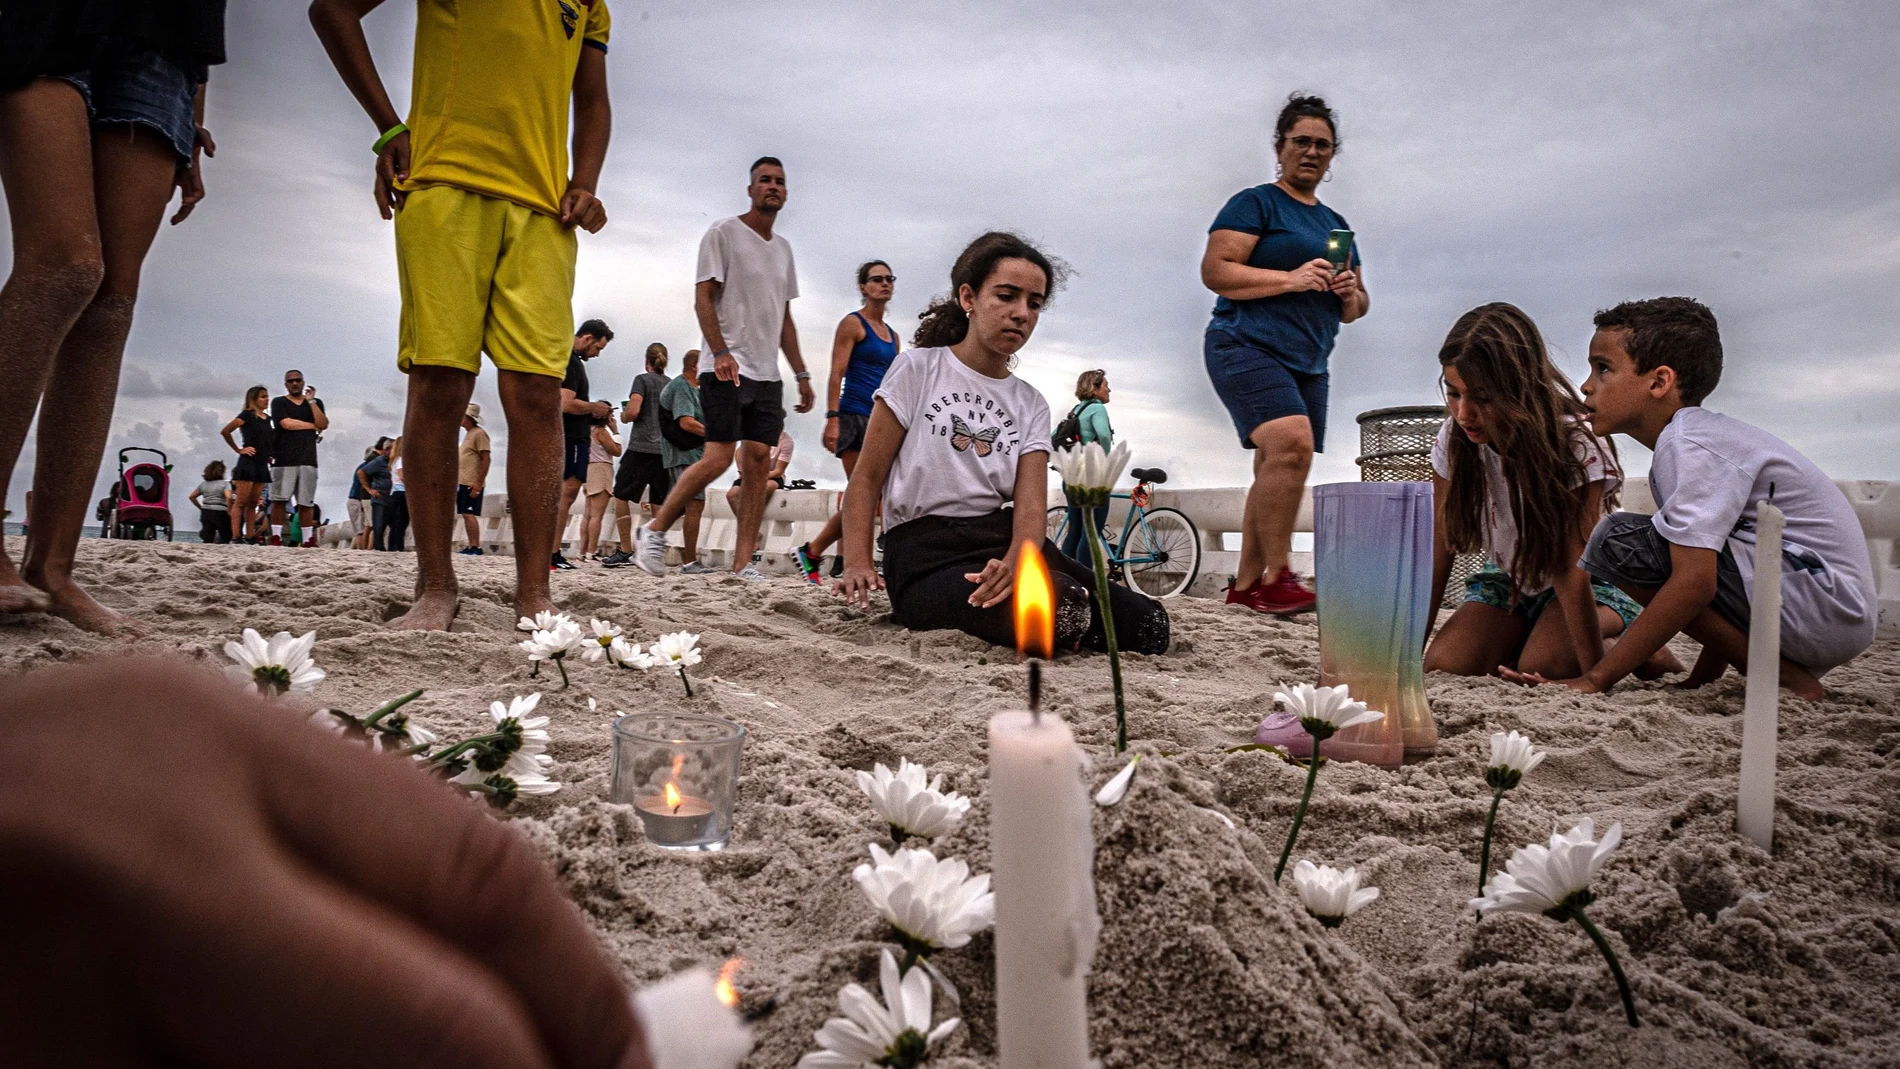 Unos niños encienden velas durante una pequeña vigilia en memoria de los desaparecidos en el derrumbe del edificio de Surfside, Florida. EFE